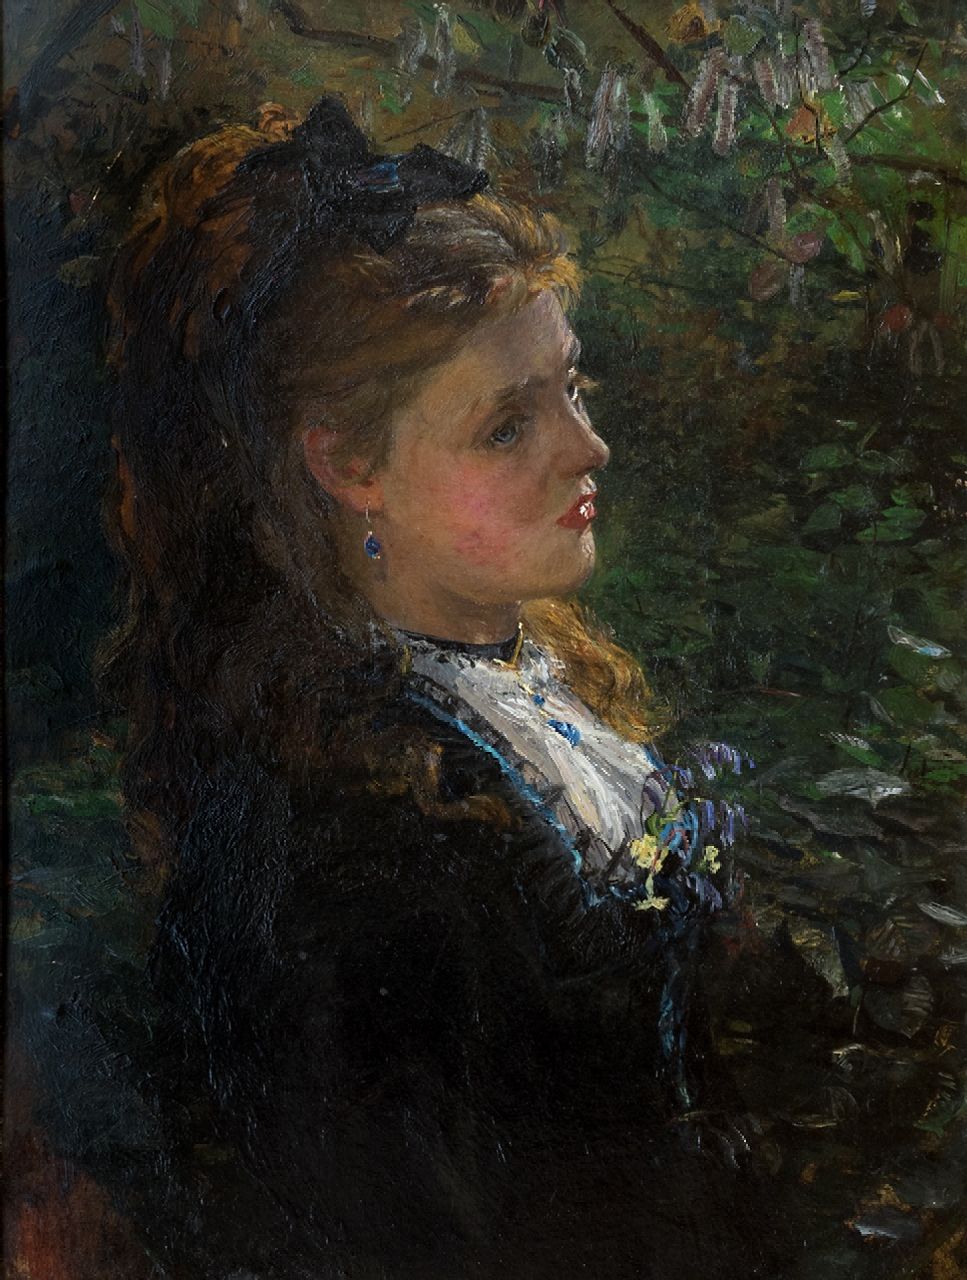 Carroll Beckwith | Portret van een jonge vrouw onder de bomen, mogelijk de jonge Lilly Langtry (21 jaar), olieverf op board, 40,0 x 30,0 cm